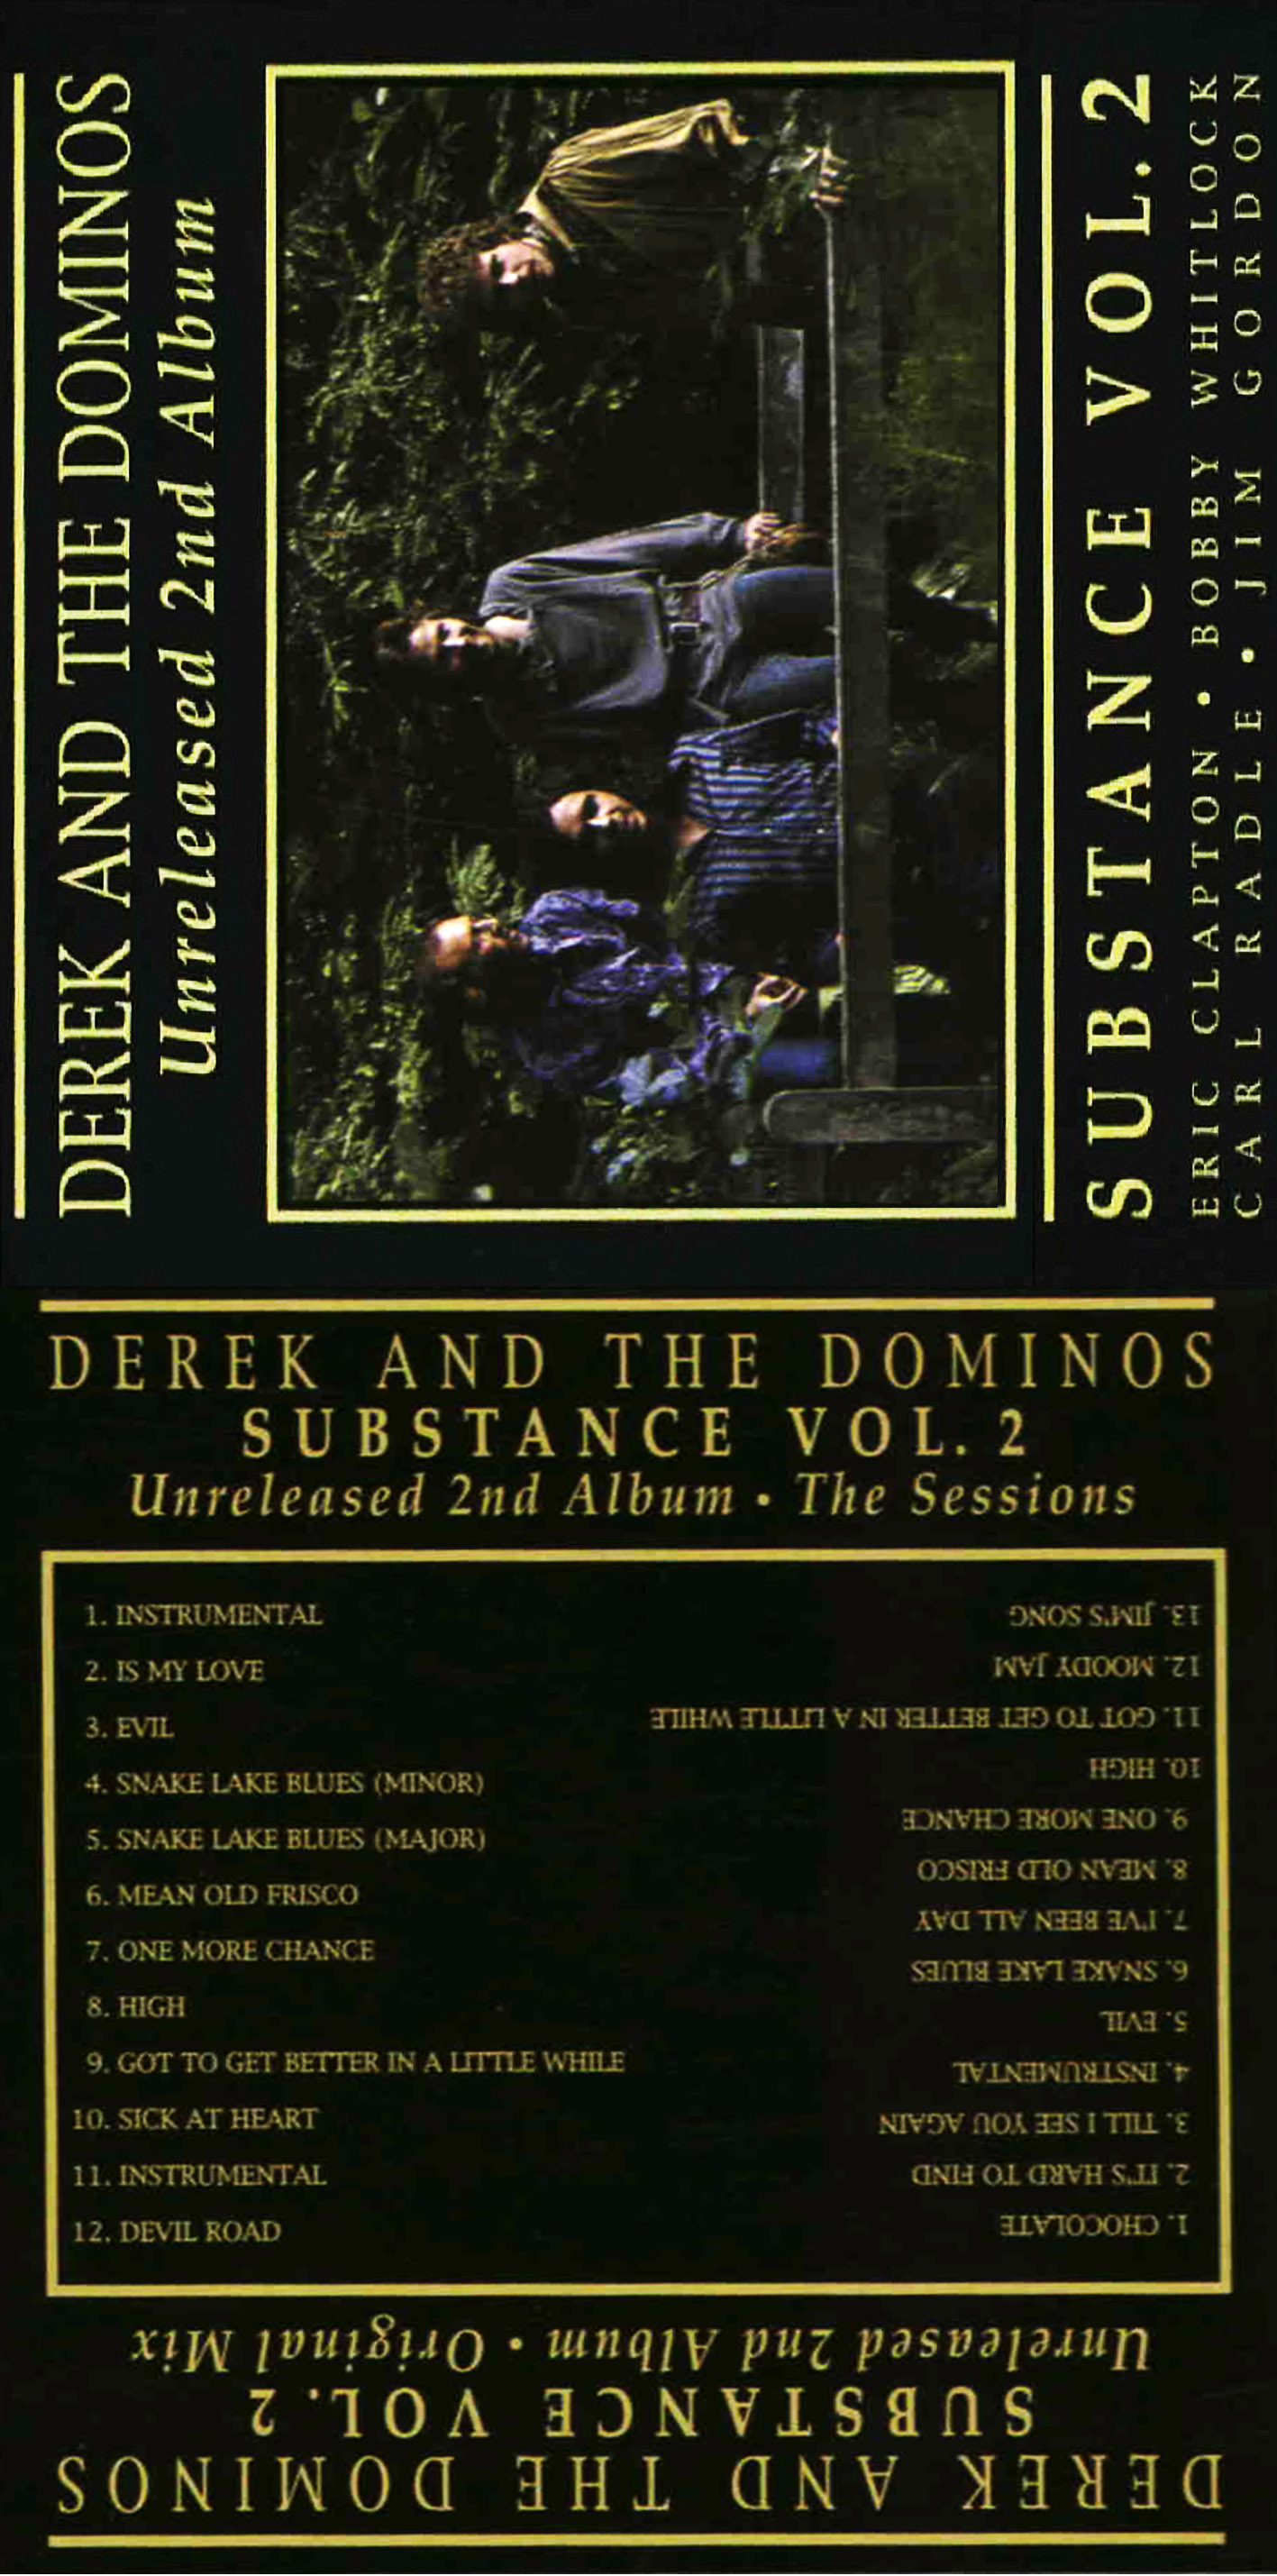 DerekAndTheDominoes1970UnreleasedSecondAlbum (2).jpg